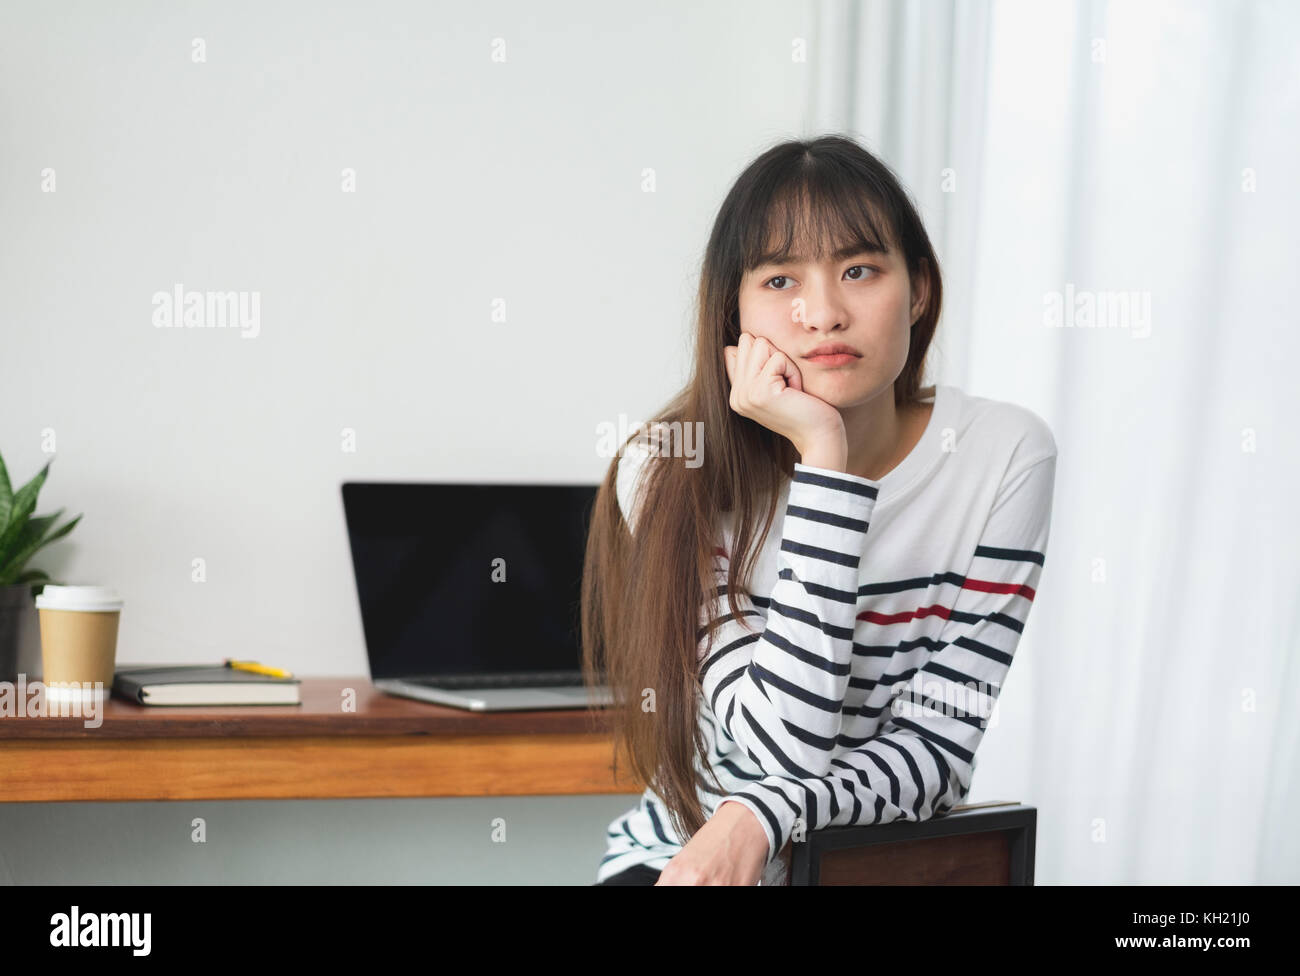 Asien Frau über das Arbeiten bei Cafe Restaurant gelangweilt, weiblich rest Kinn auf der Hand mit Stress Gefühl mit Laptop und Kaffee Tasse auf dem Tisch im Coffee Shop, bori Stockfoto